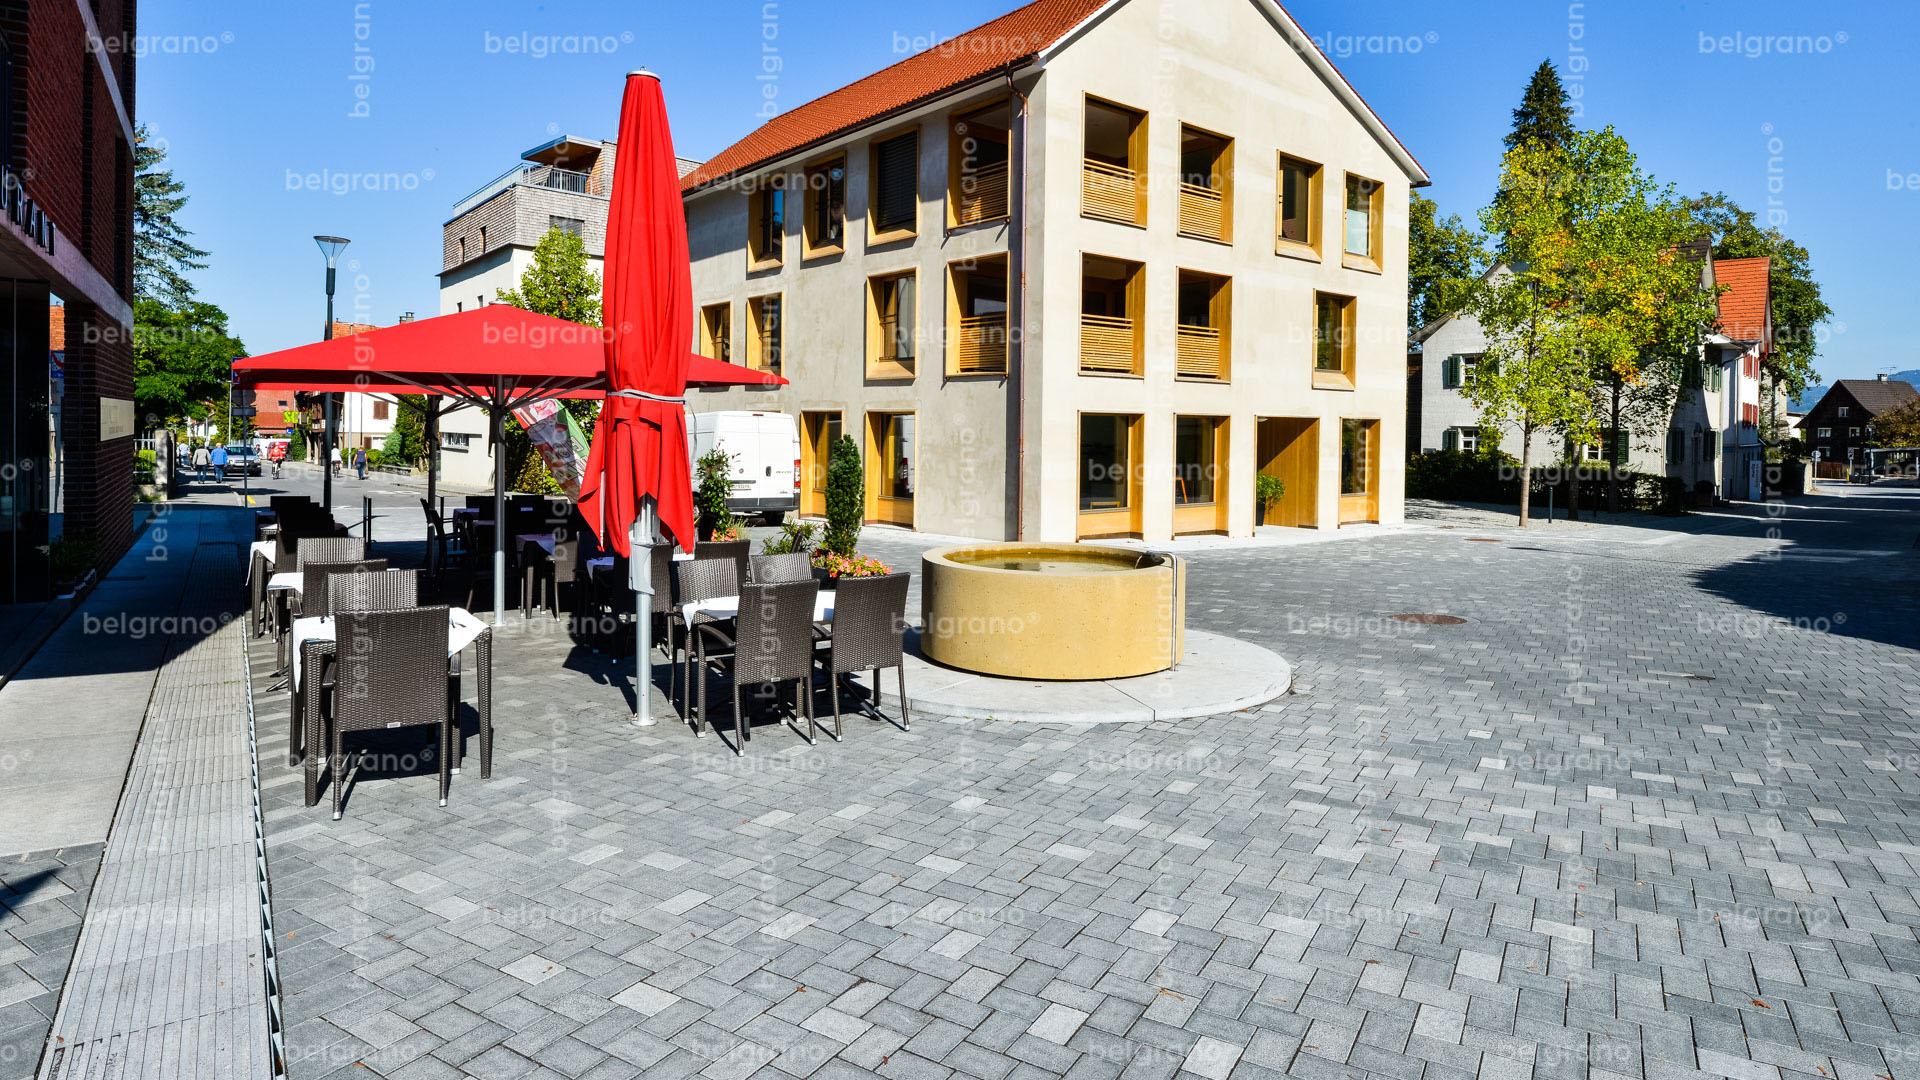 Fußgängerzone von Hohenems mit belgrano® Naturstein Pflastersteine, Bodenplatten, taktile Leitsystemen, Sitzelemente und Muldensteine aus Granit